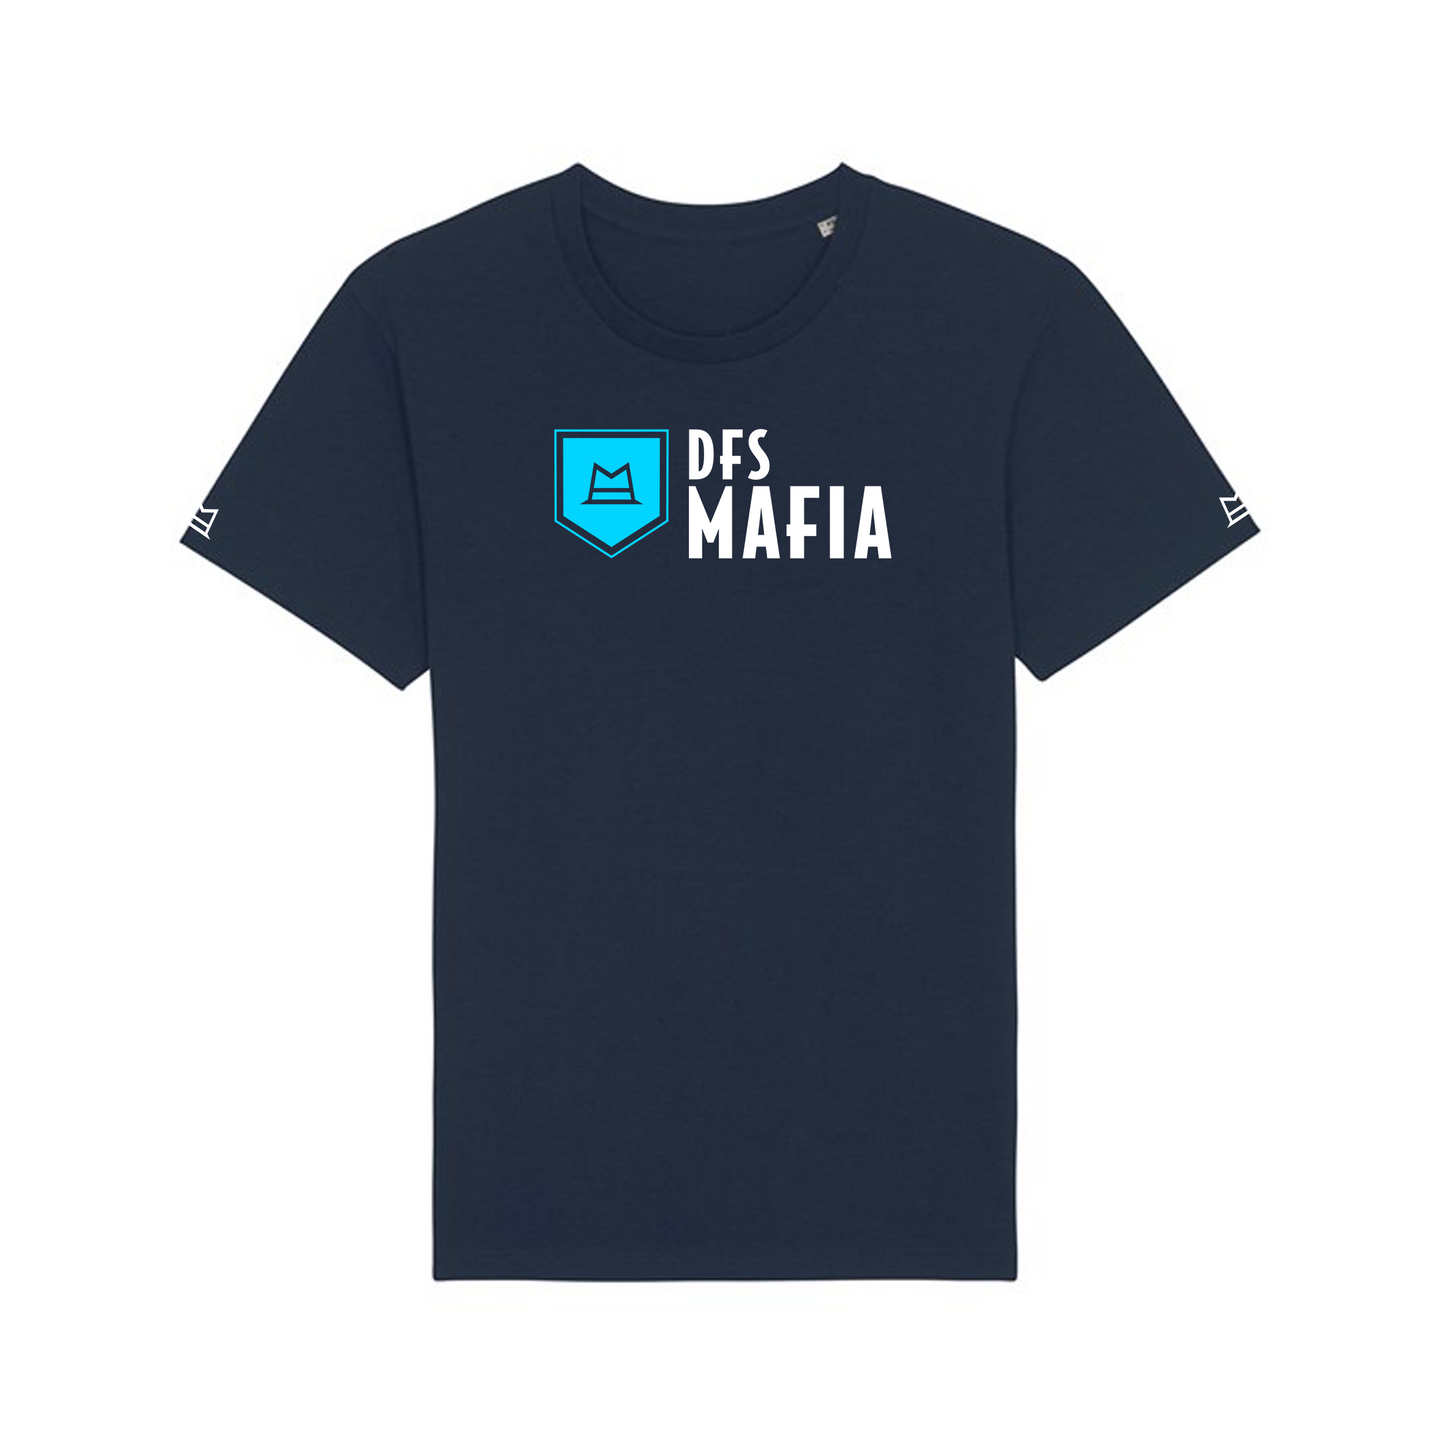 DFS-MAFIA Unisex T-Shirt